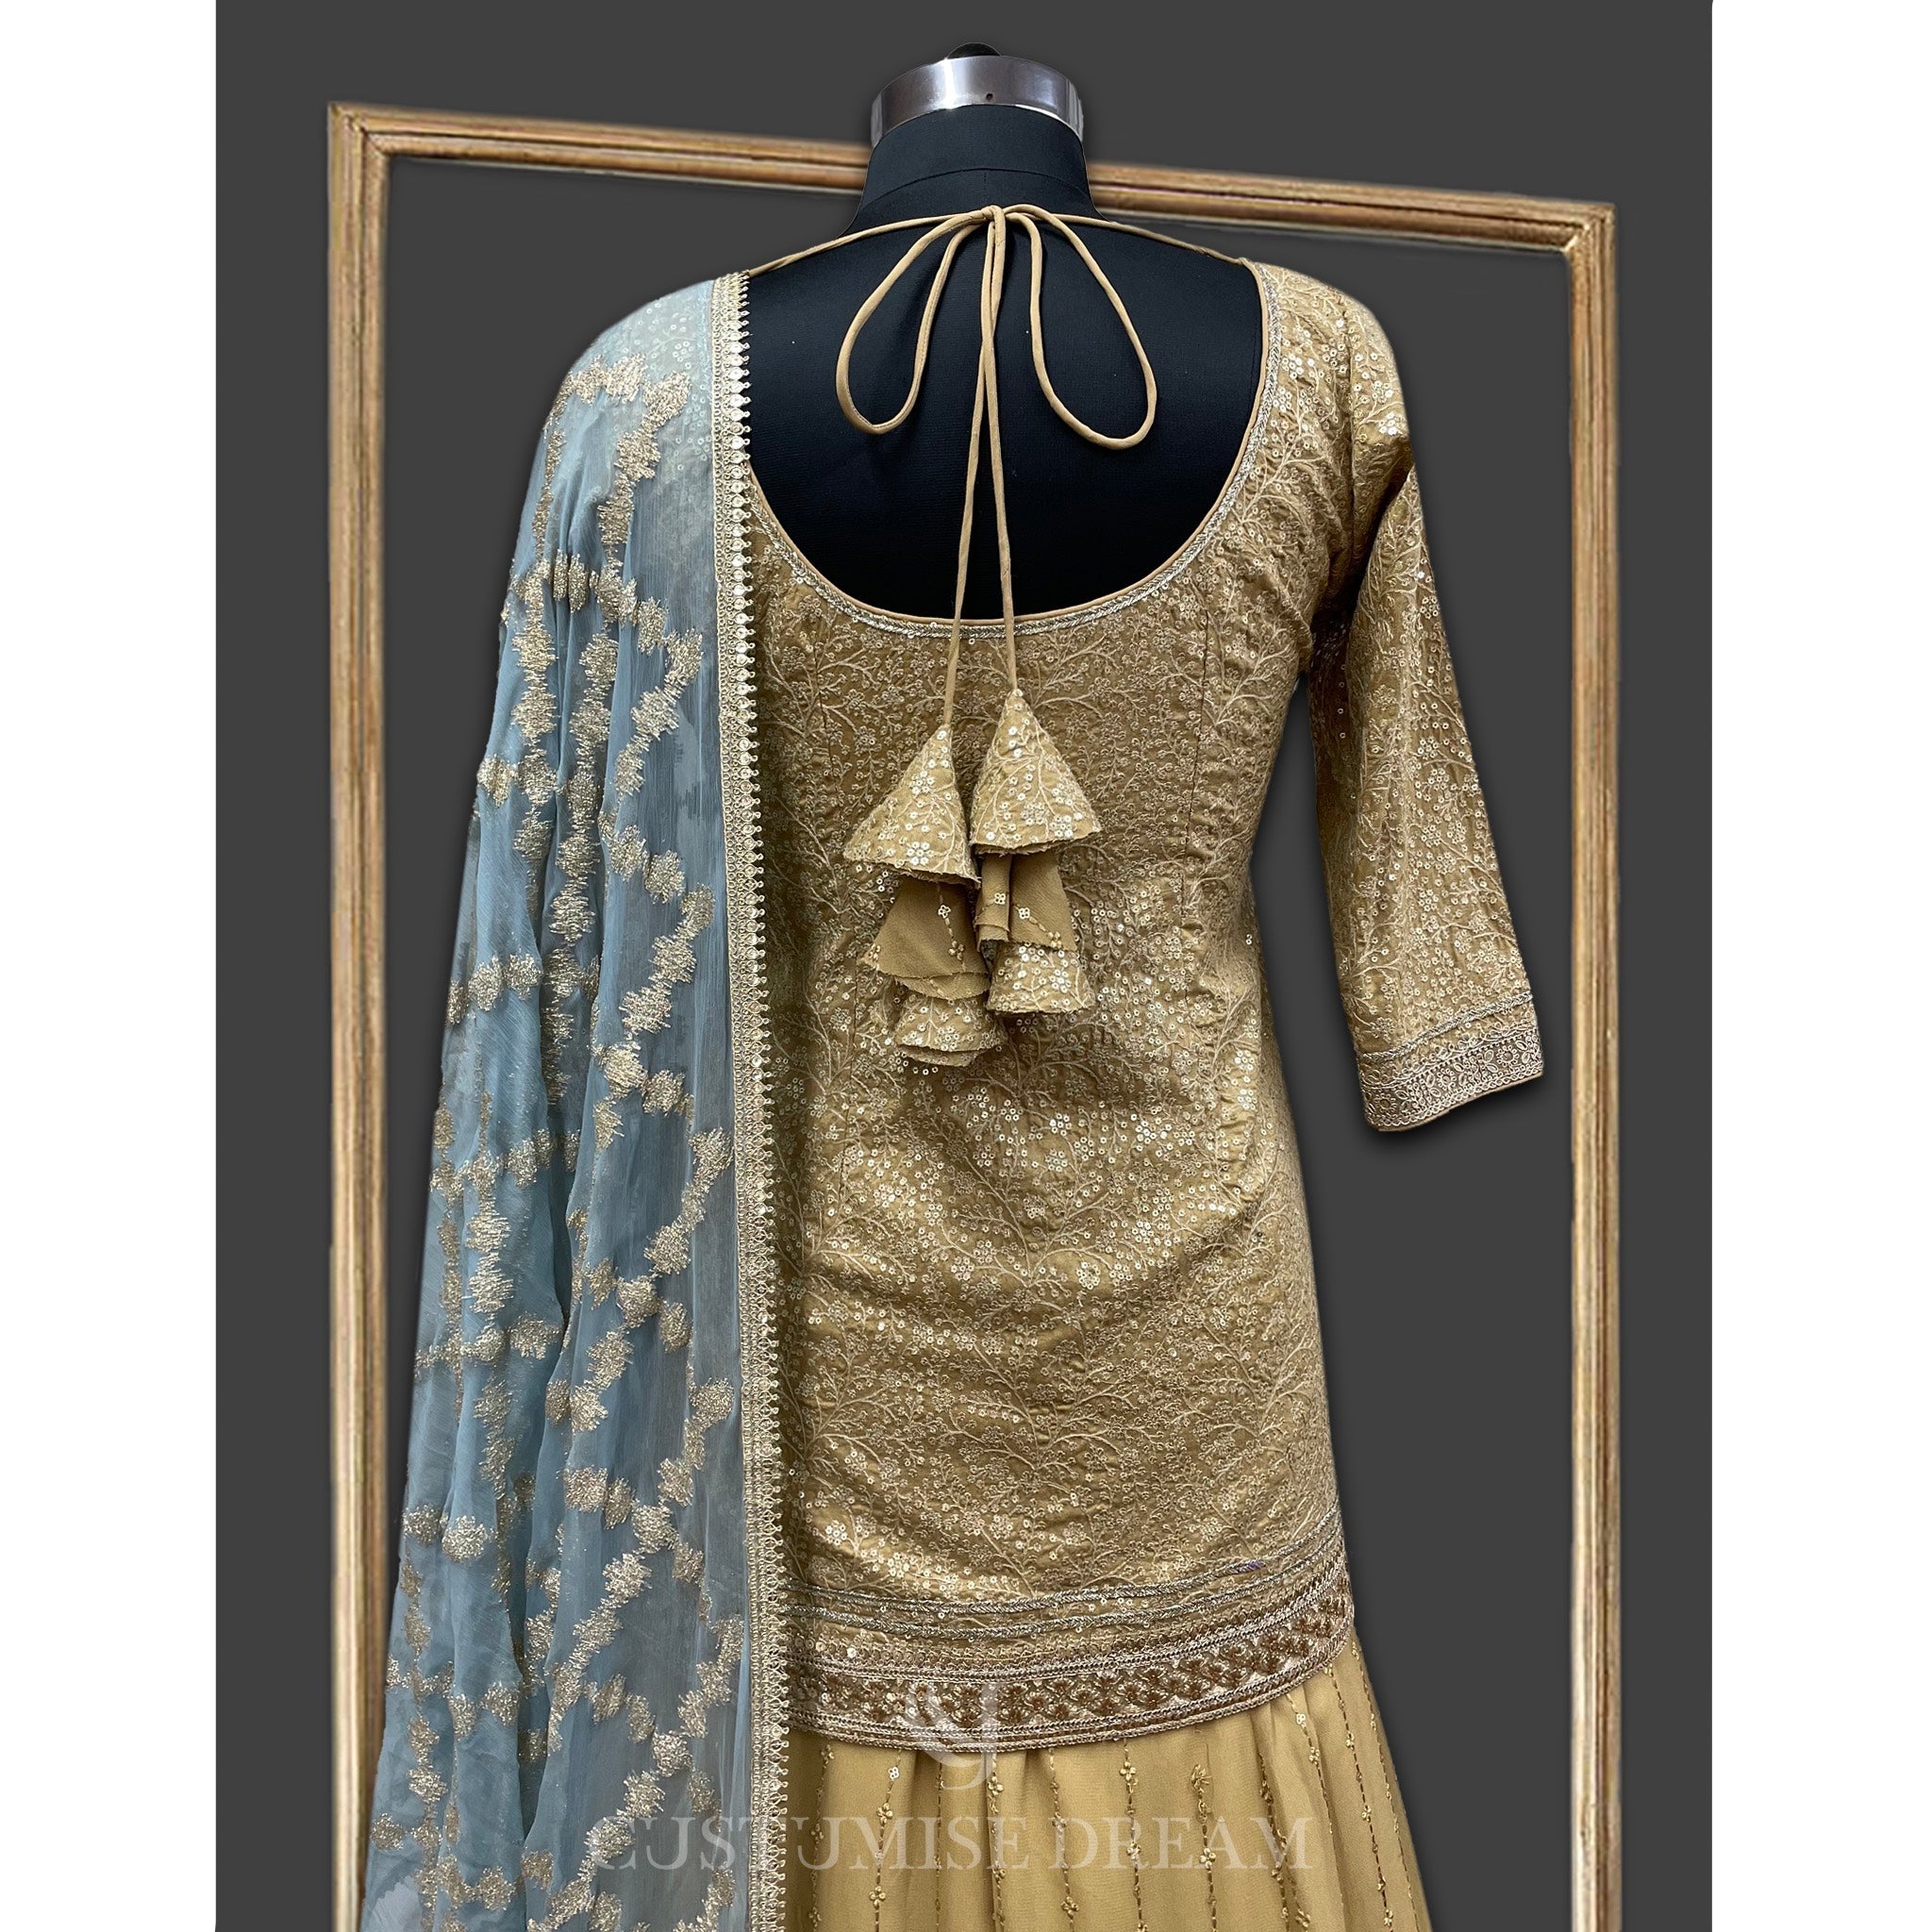 Golden Elegance: Embroidered Sharara Set - Indian Designer Bridal Wedding Outfit